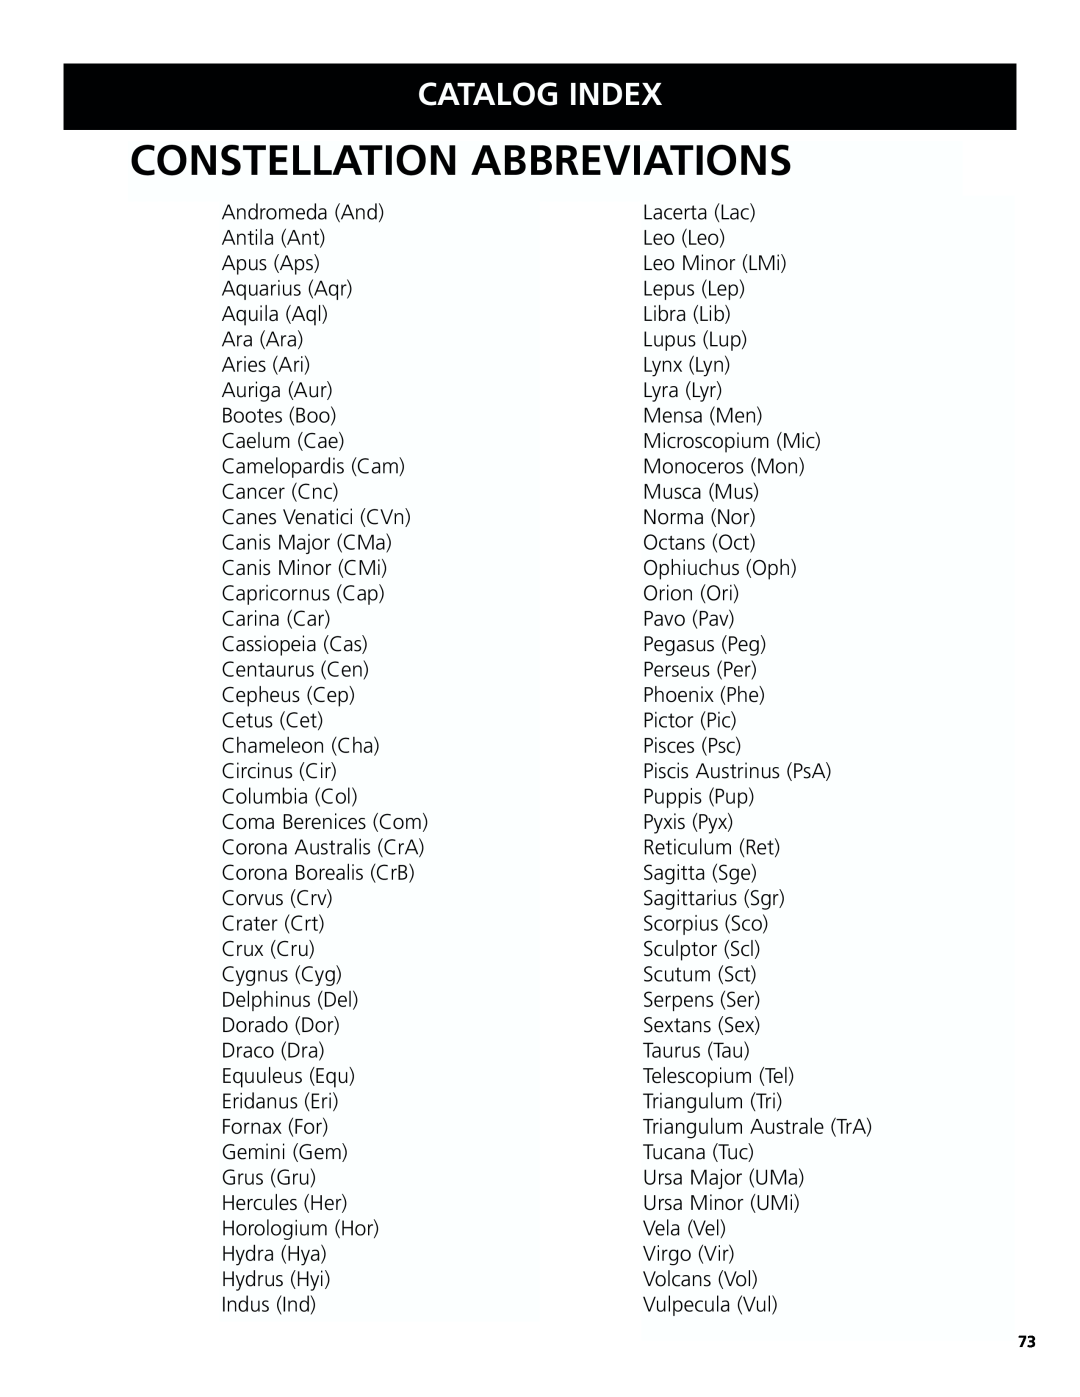 Bushnell 78-8831, 78-8846 instruction manual Constellation Abbreviations, Catalog Index 